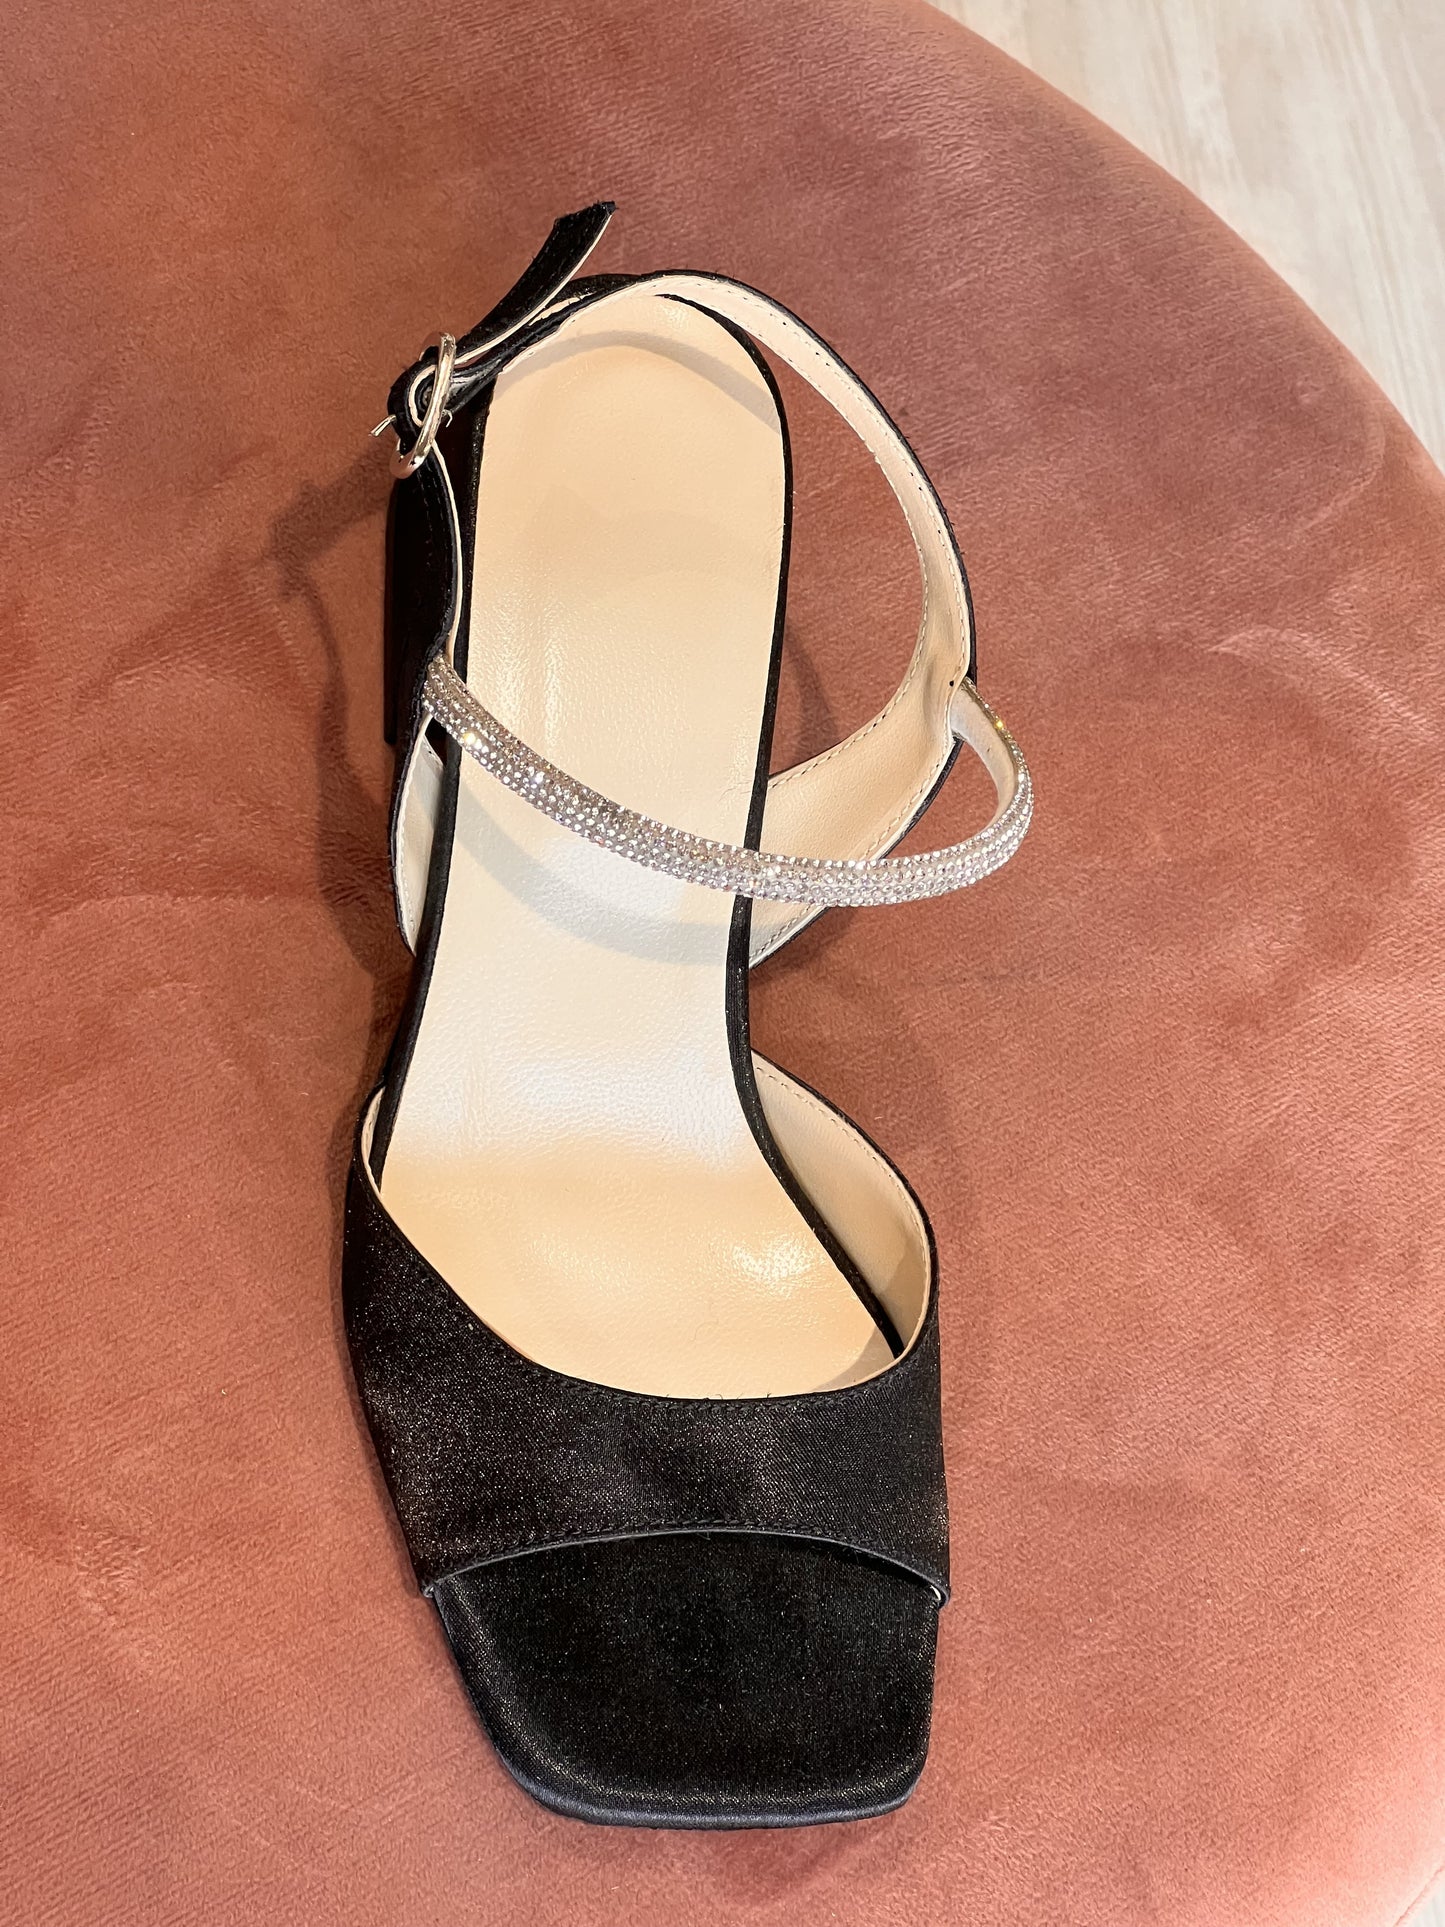 Sandalo tacco basso in raso nero e strass